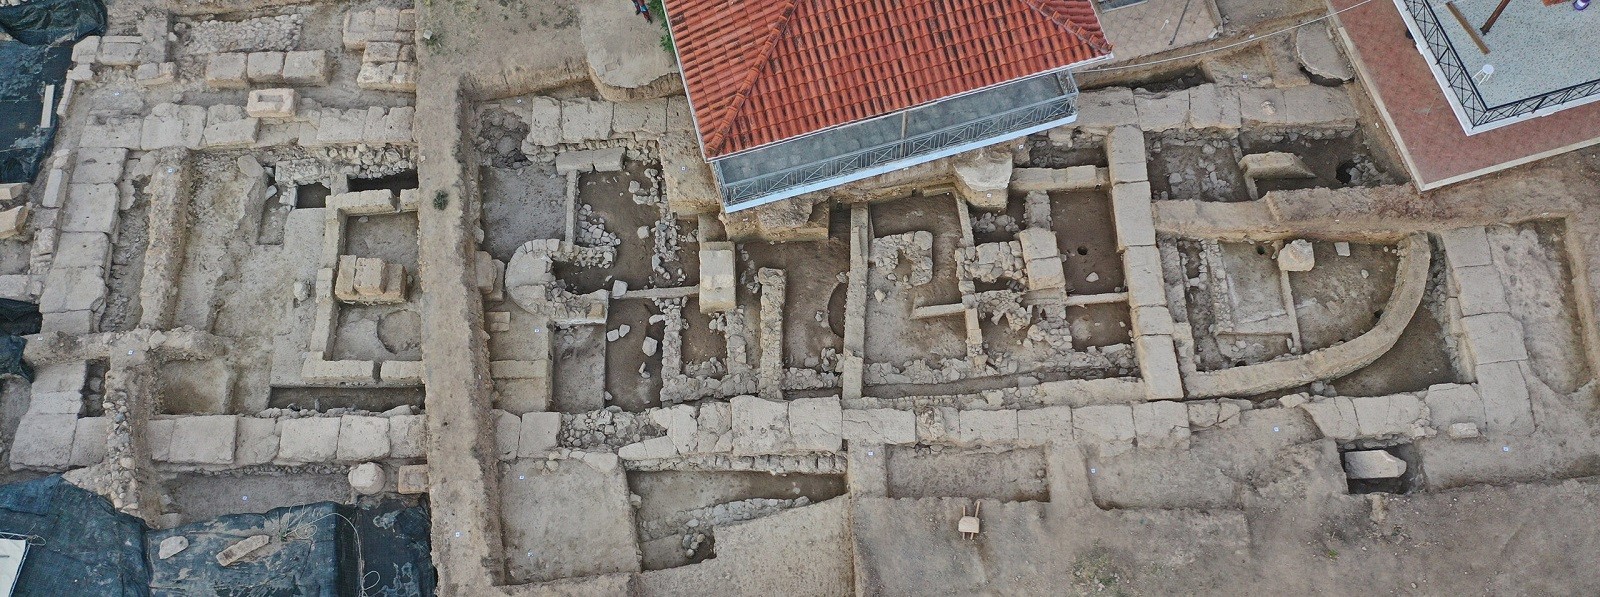 Imponująca świątynia i przerażające ofiary. Naukowcy odnaleźli liczne szczątki w historycznym miejscu